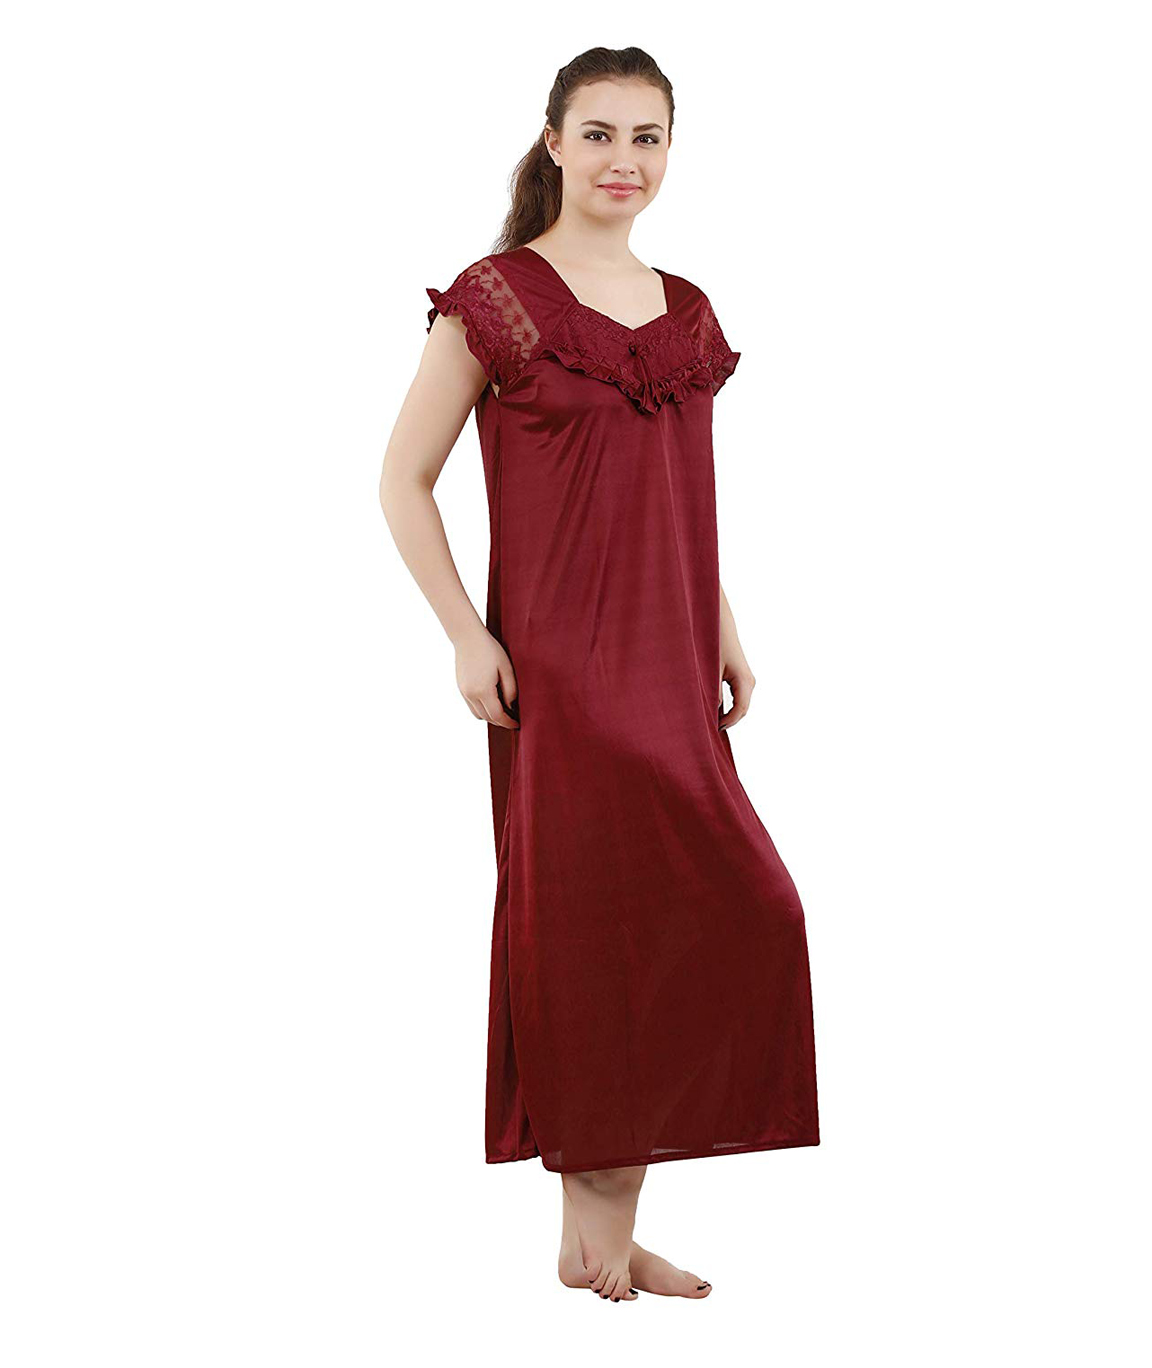 Romaisa Women`s Satin Lace Work Nightdress with Robe (Size - Small